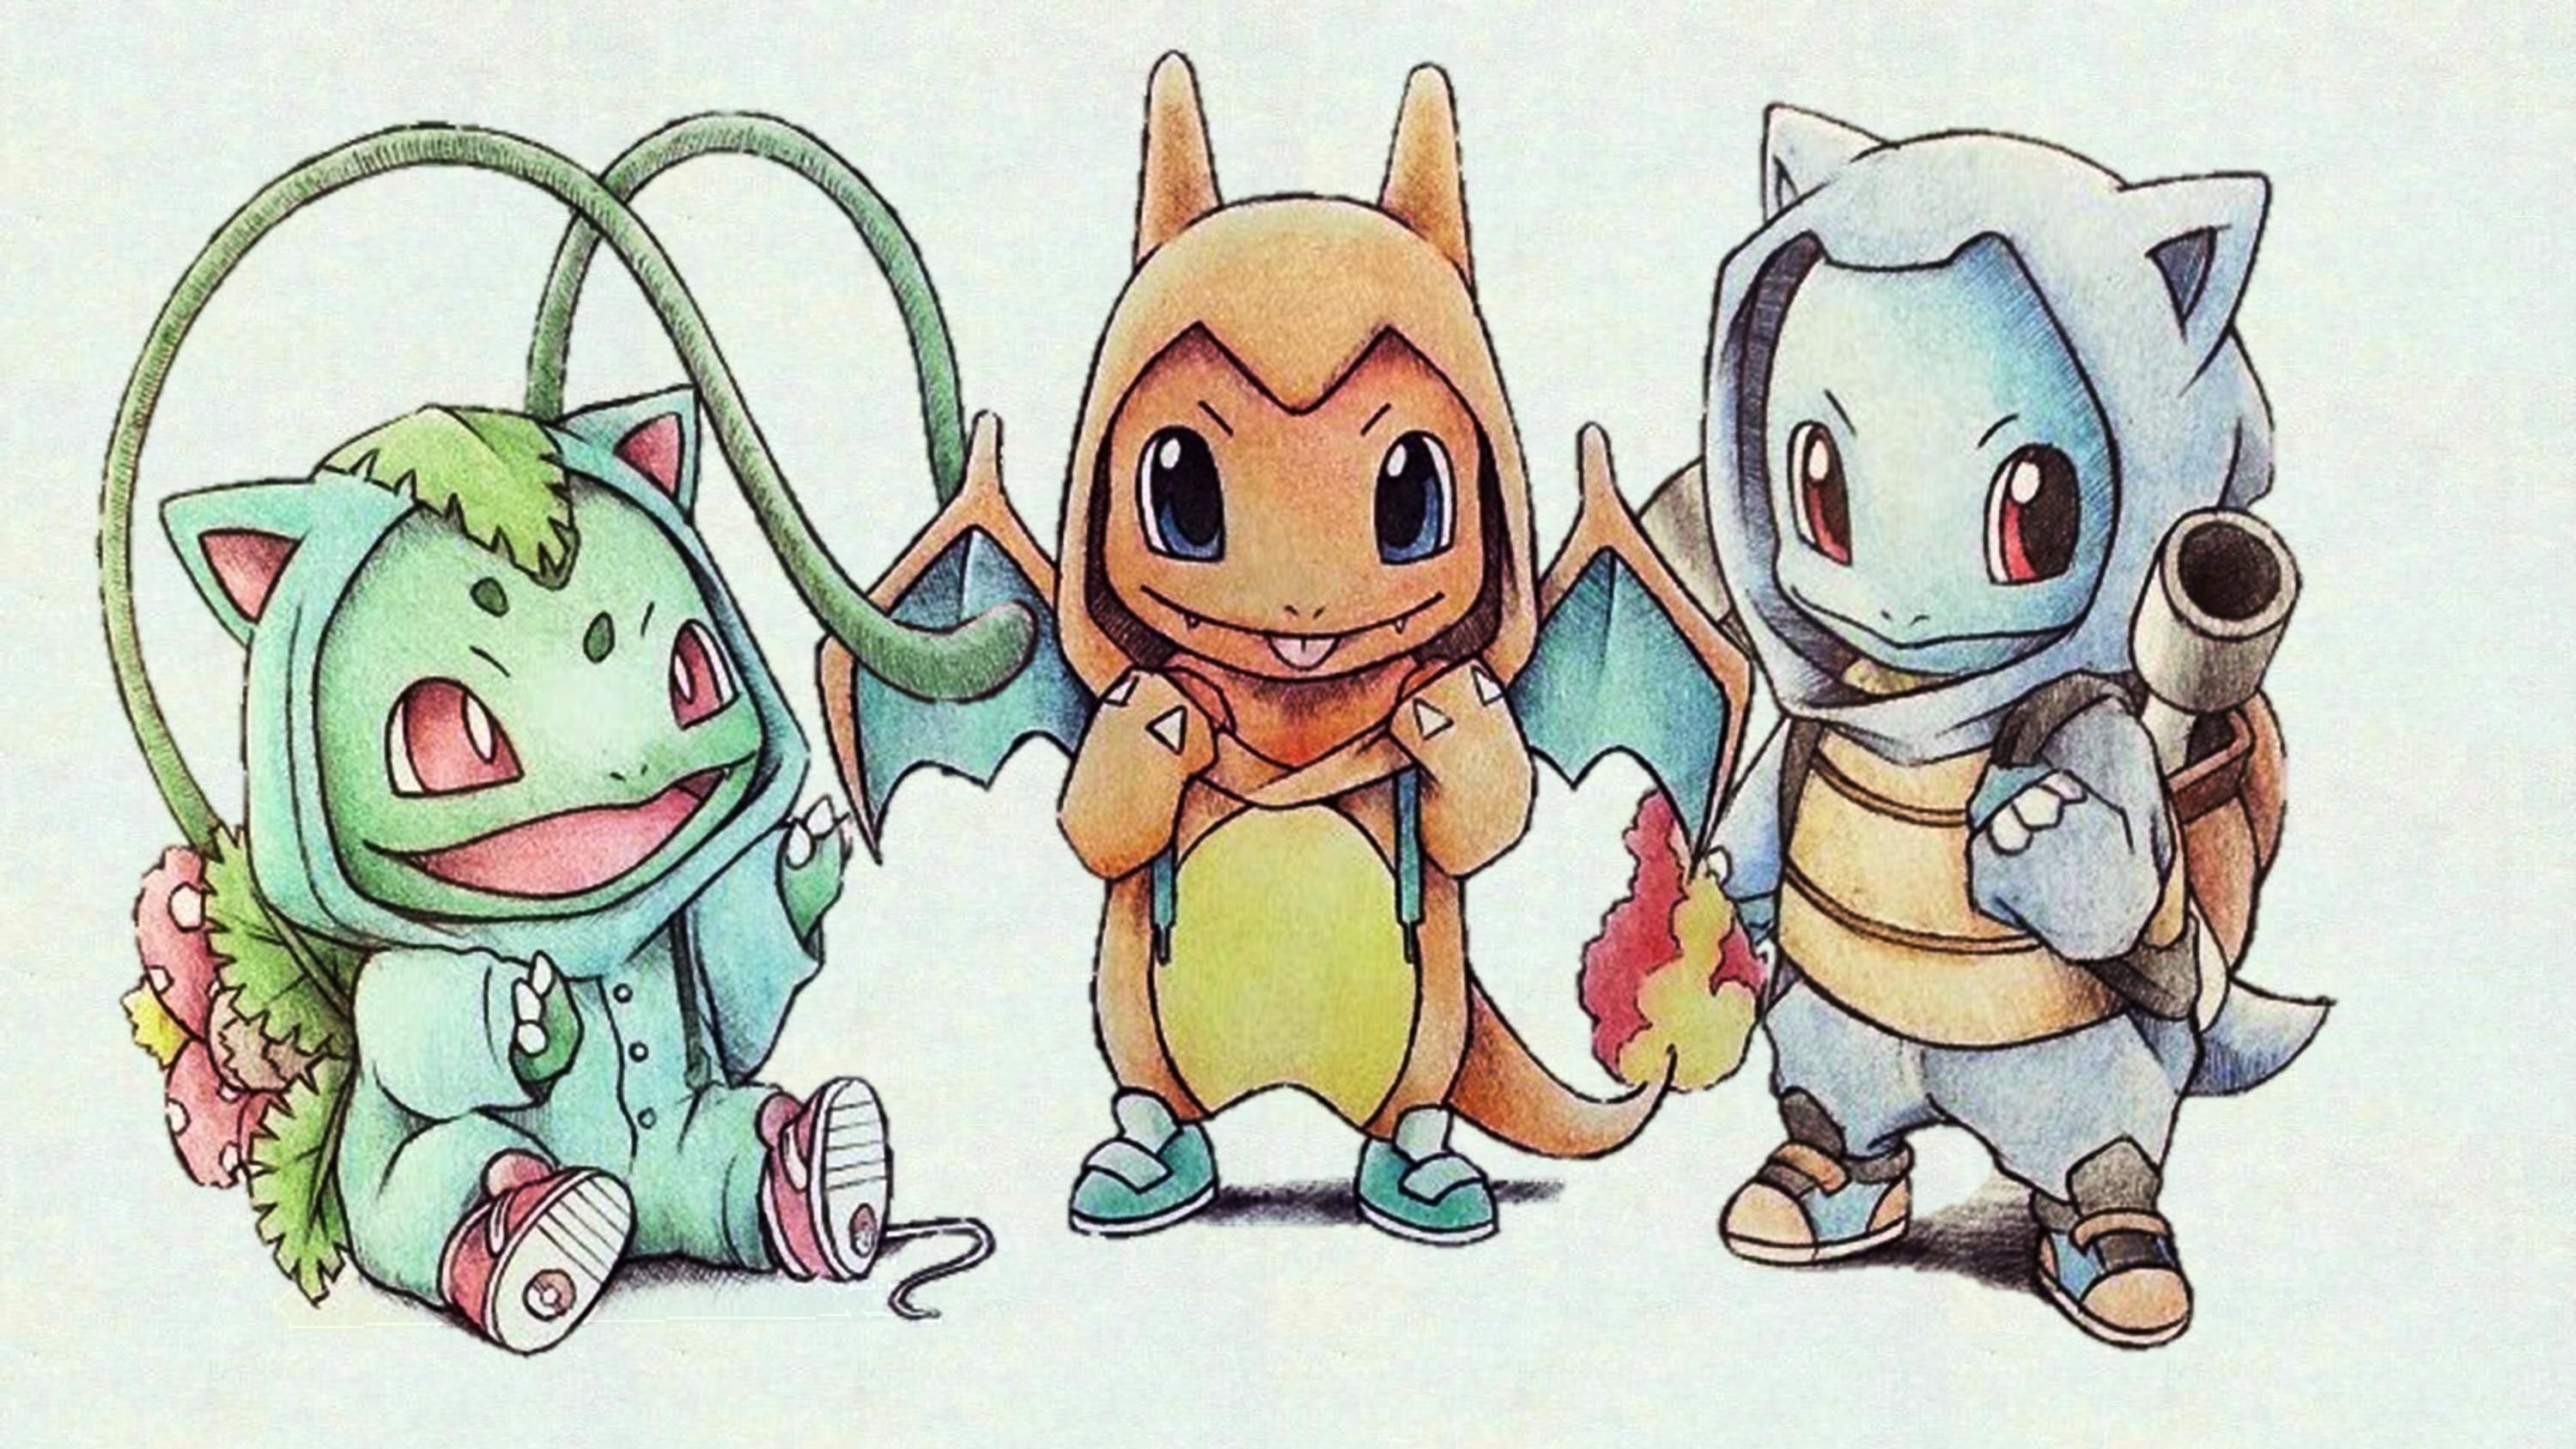 Pokemon Cute